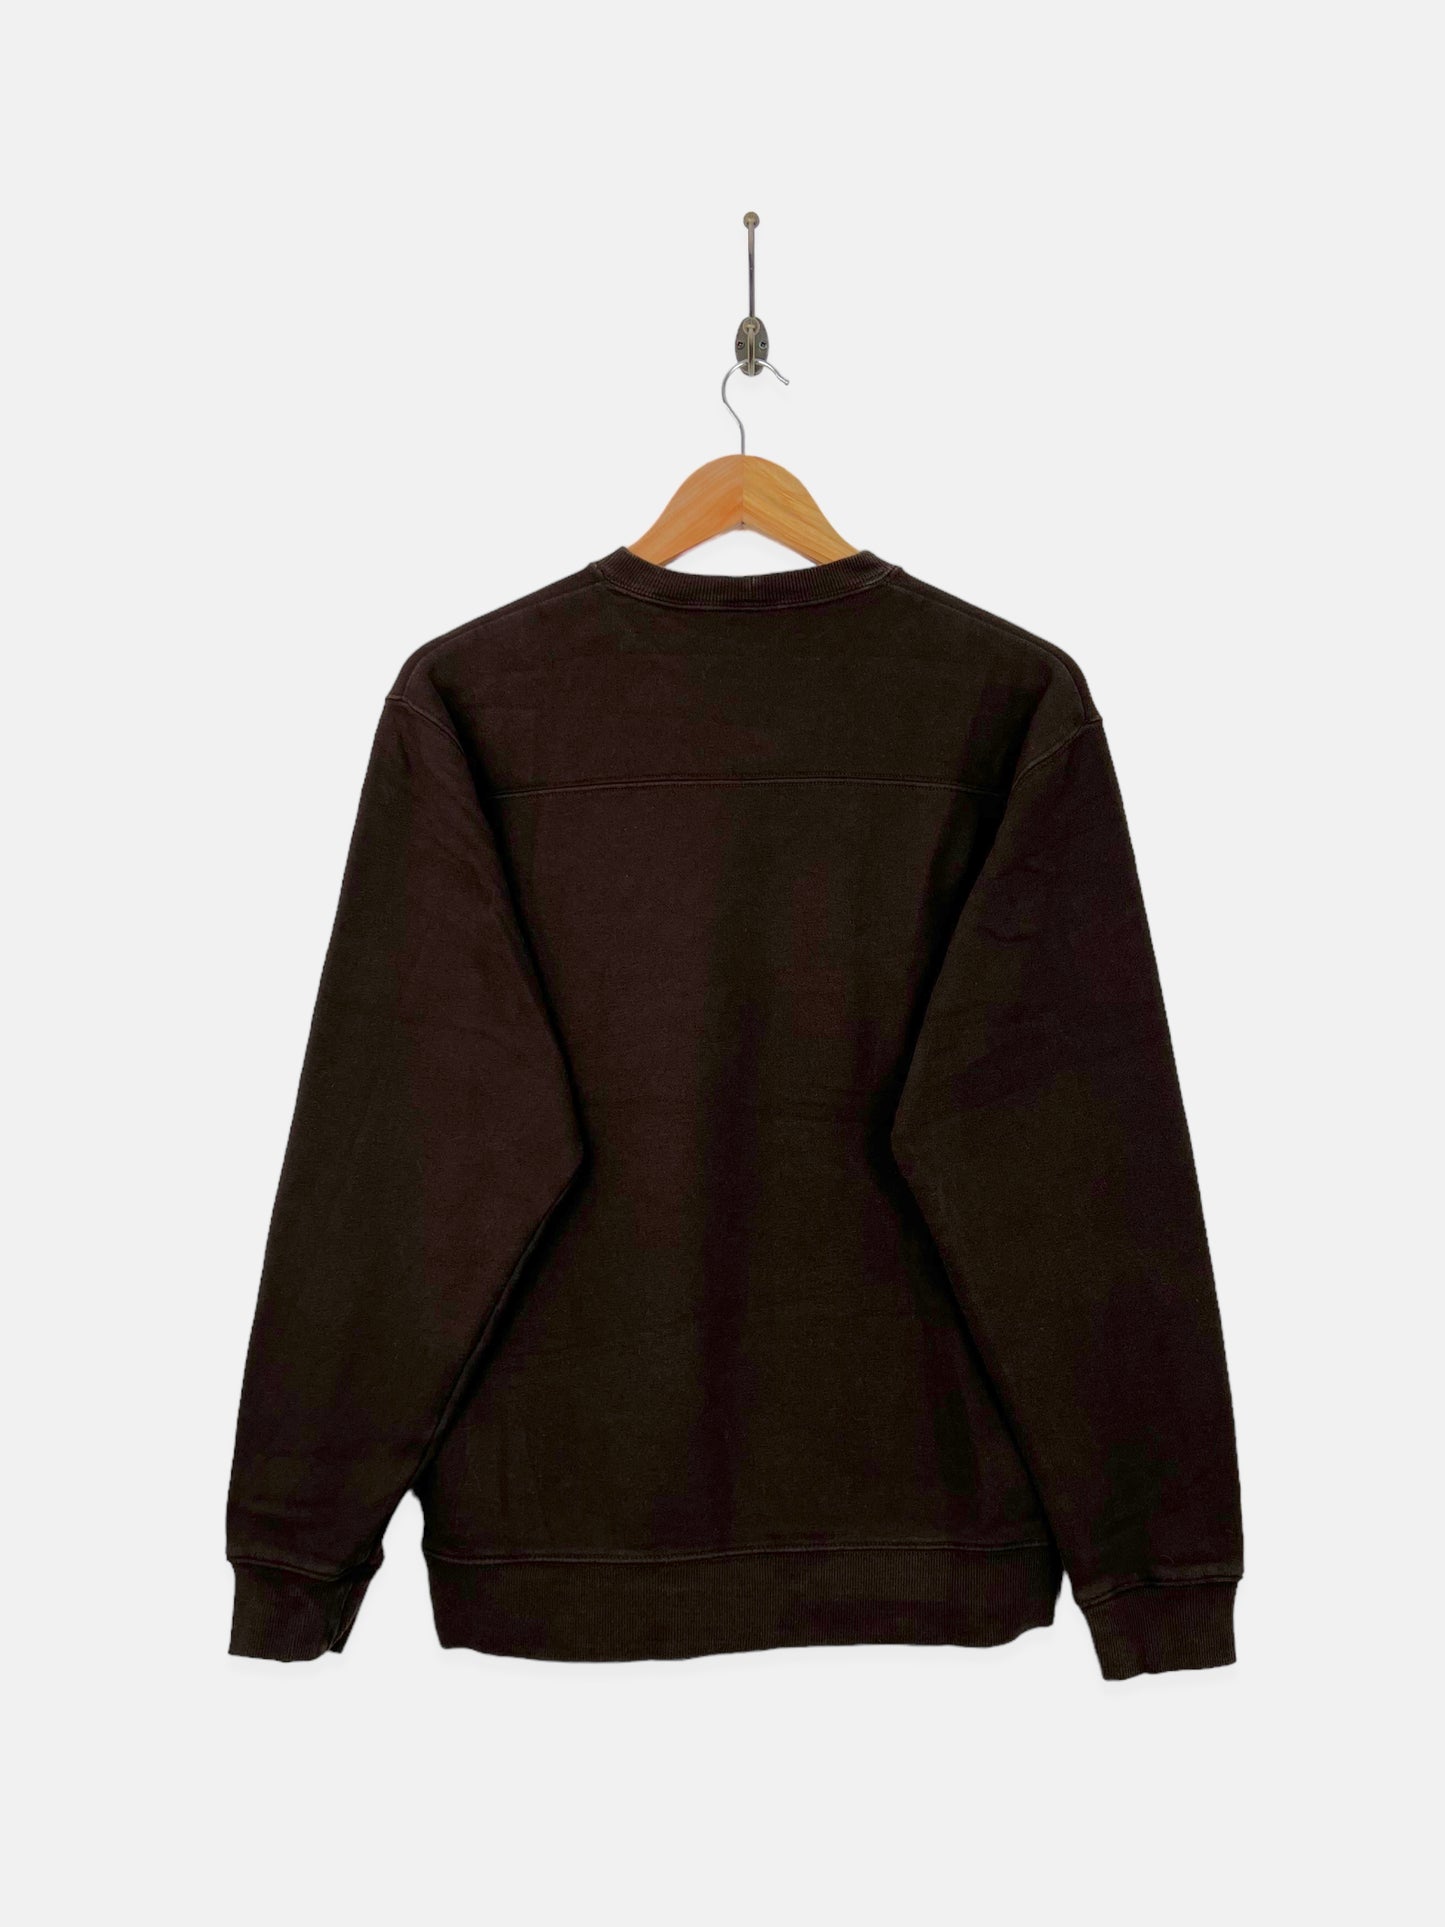 Columbia Embroidered Vintage Sweatshirt Size 8